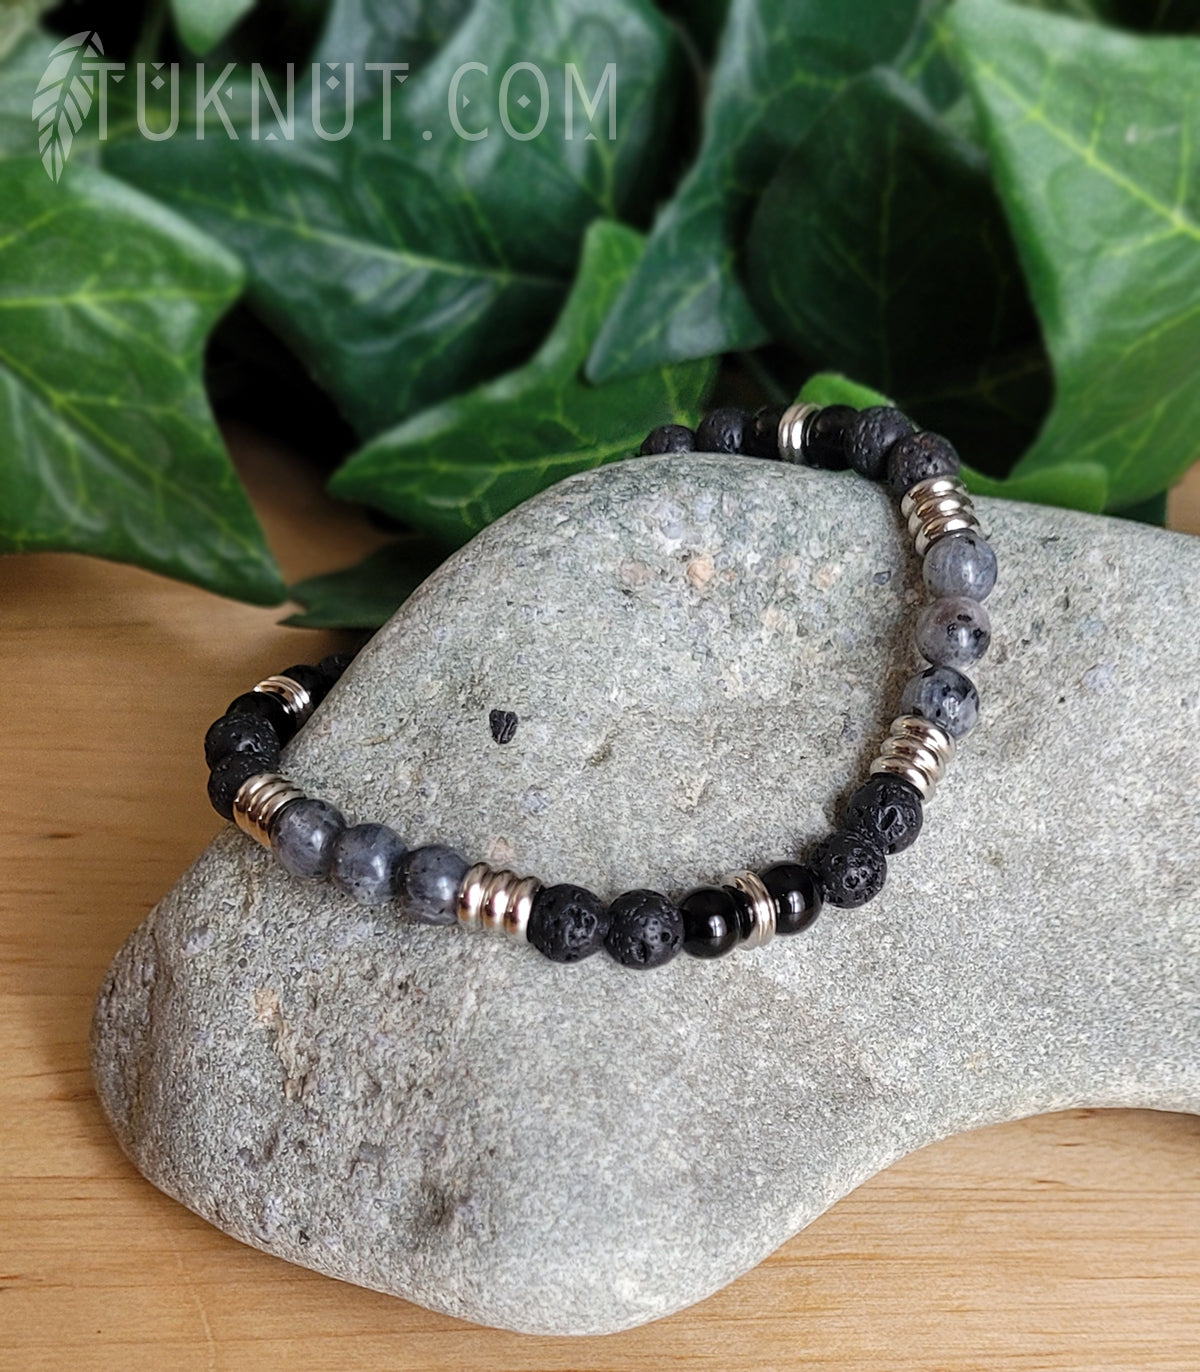 Bracelet extensible avec pierre volcanique, onyx, labradorite et billes séparatrices en acier inoxydable (couleurs noir, gris et argent) TUKNUT